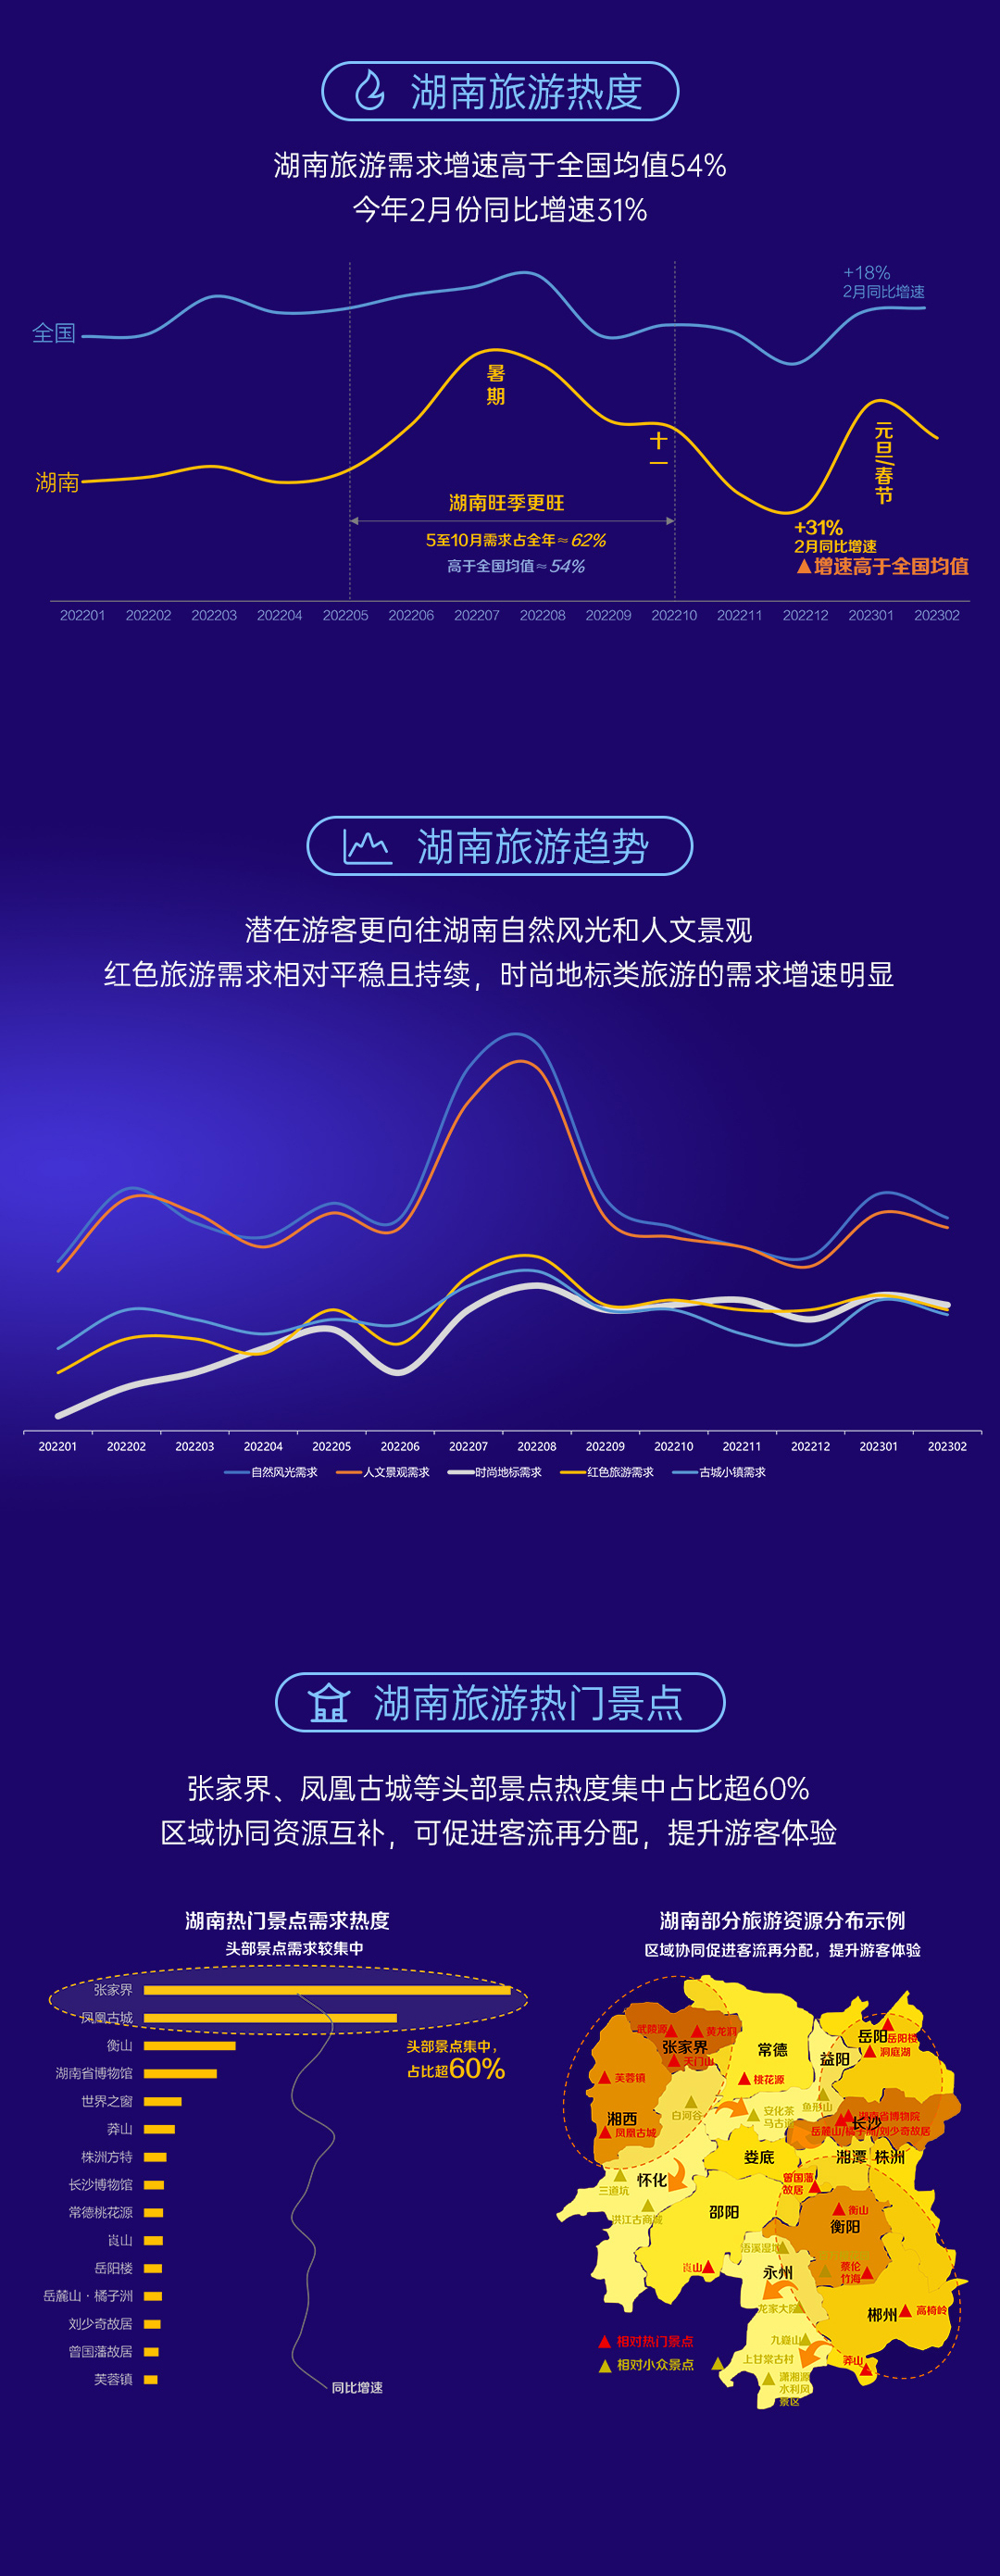 《数说湖南》百度搜索大数据报告发布，网民都在关注湖南哪些领域？